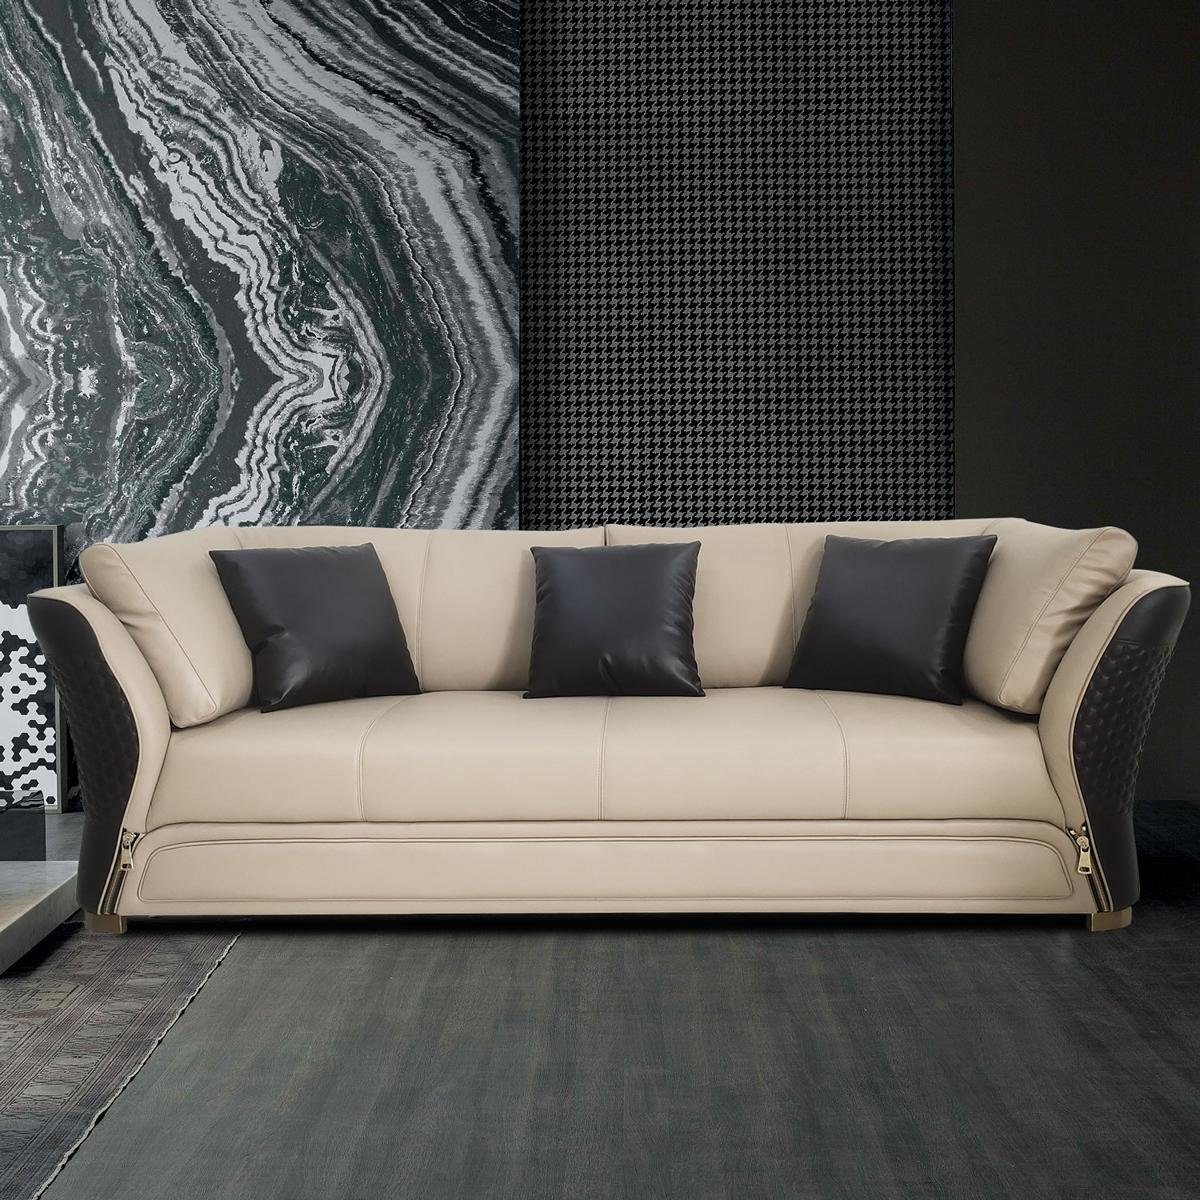 JVmoebel 3-Sitzer, Sofa Dreisitzer Couch Polster Design Sitz Sofas Zimmer Möbel Weiß/Schwarz